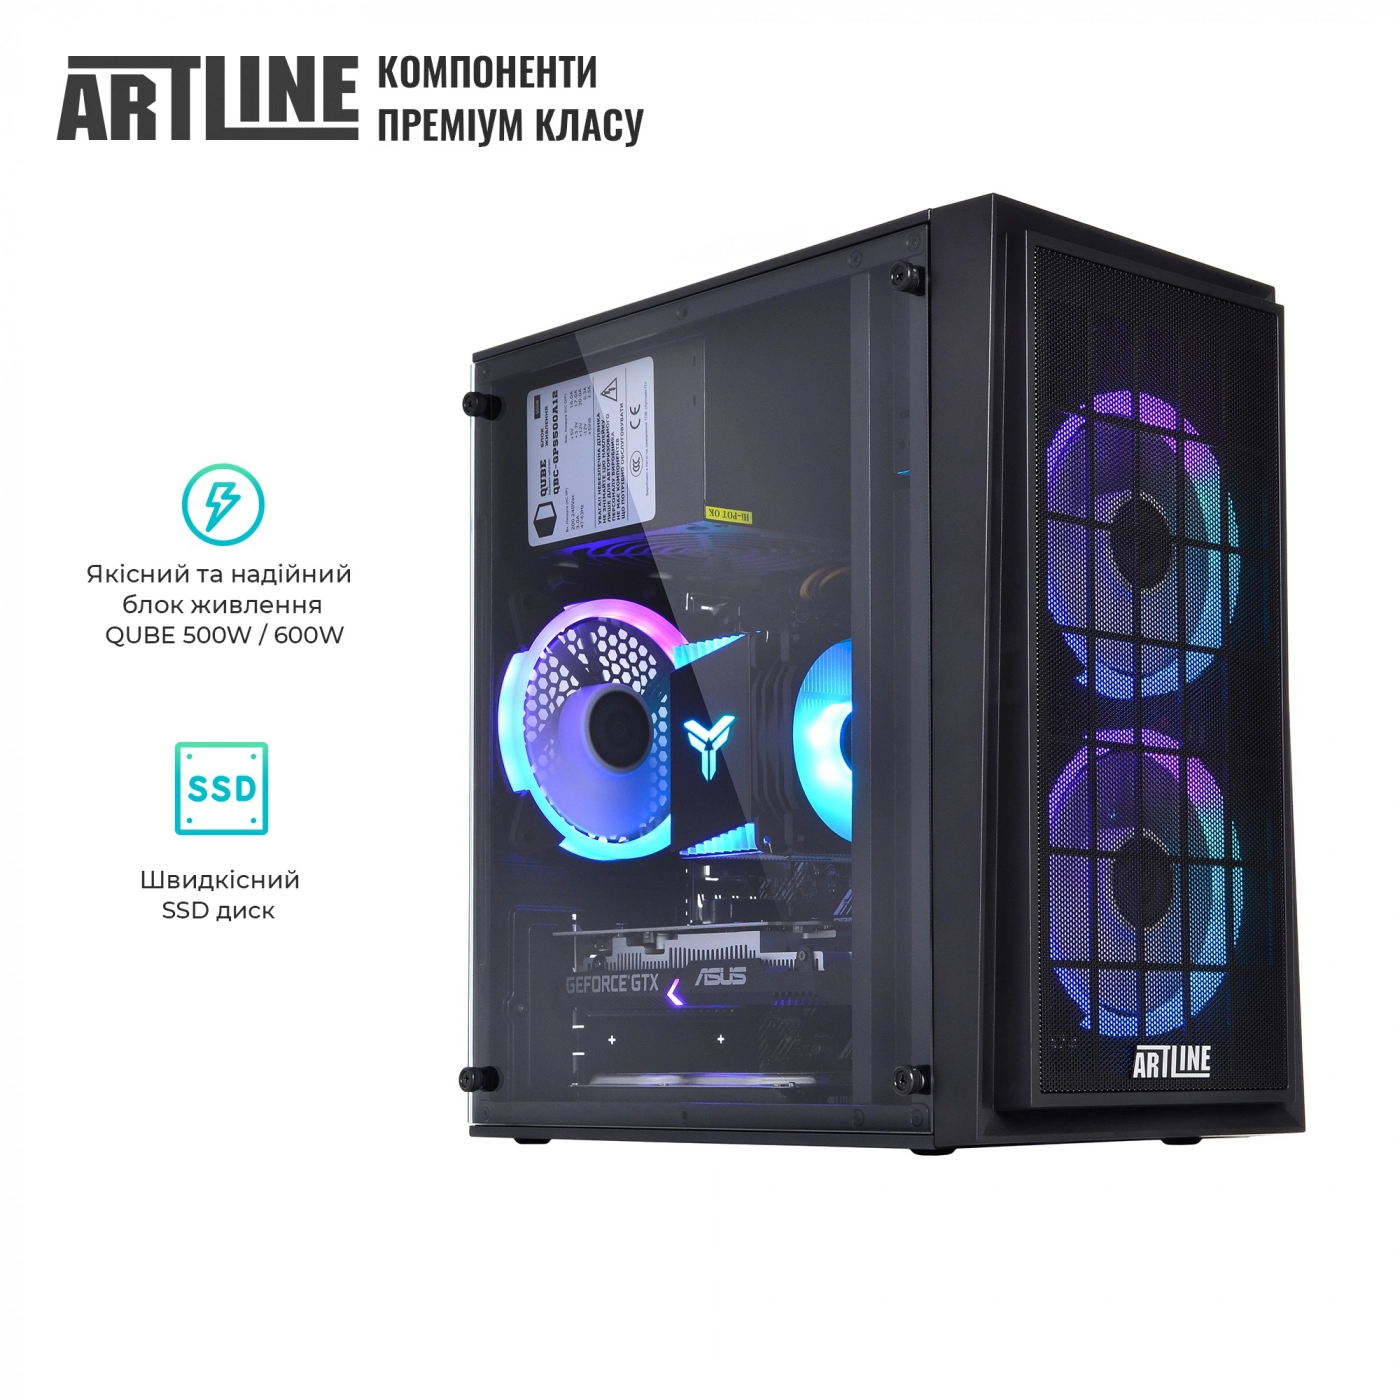 Купить Компьютер ARTLINE Gaming X43v31 - фото 8